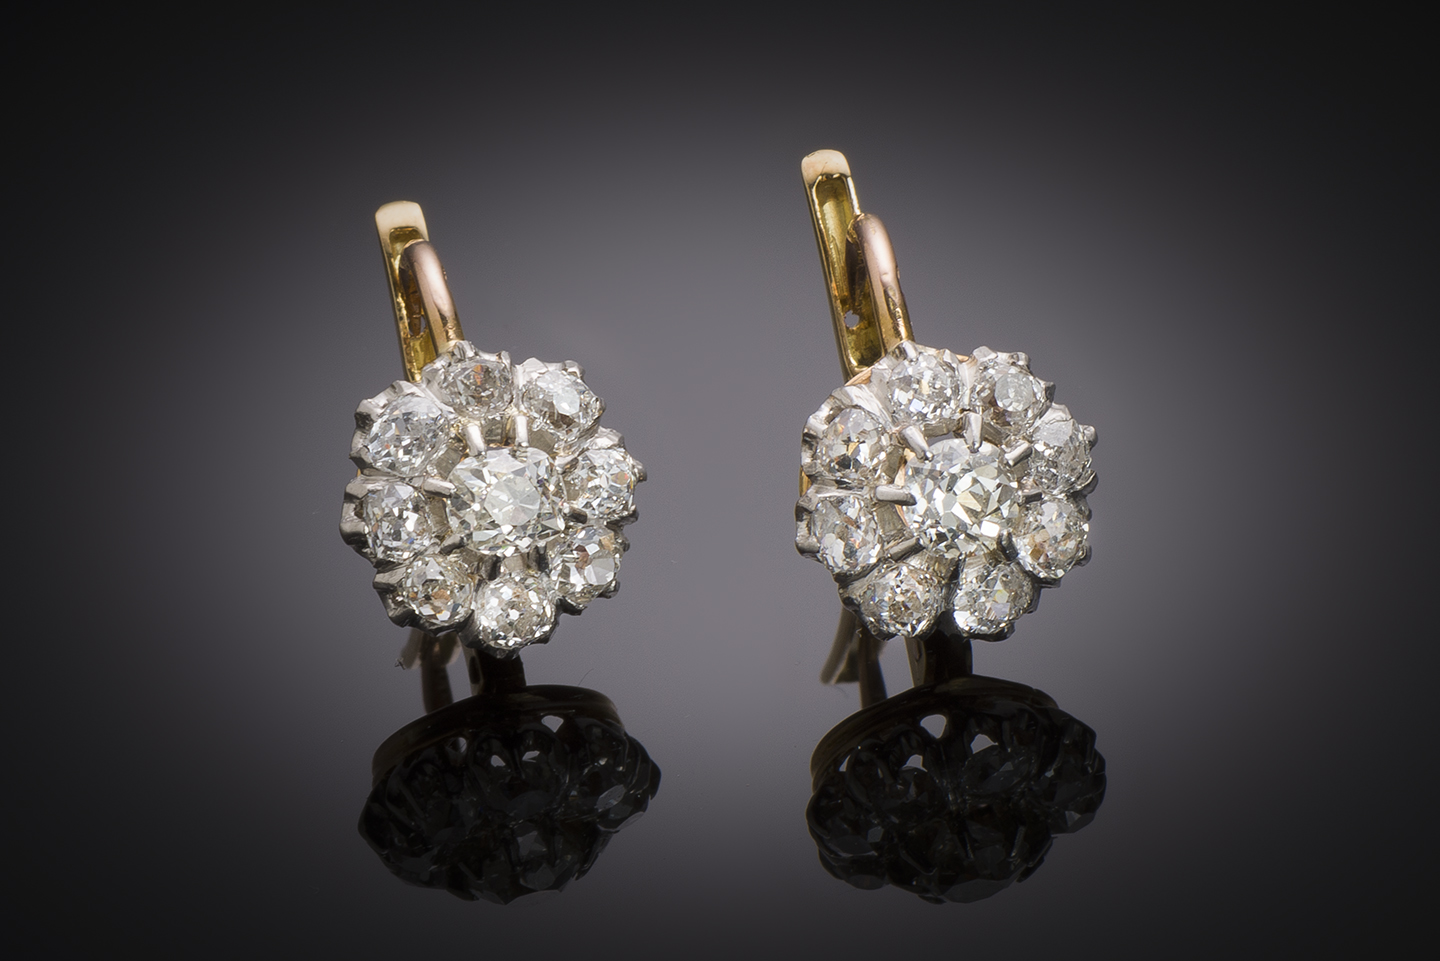 Boucles d’oreilles fin XIXe siècle diamants (2,10 carats). Travail français, poinçon tête de cheval (1838 – 1919).-1